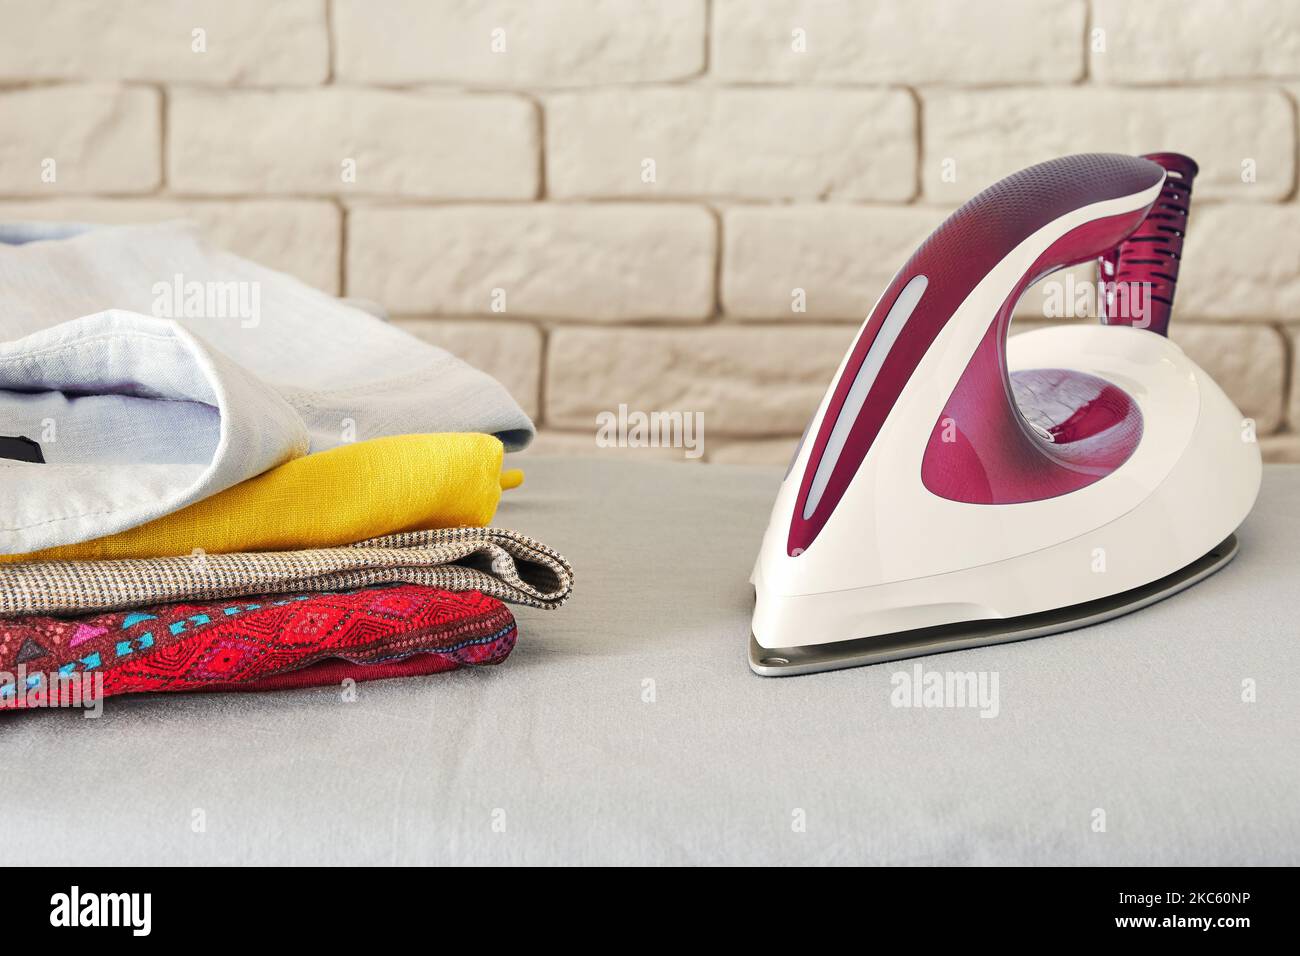 Modernes elektrisches Bügeleisen und Stapel gefalteter Kleidung auf dem Brett. Thema Hausarbeit und Wäscherei. Platz für Text kopieren Stockfoto